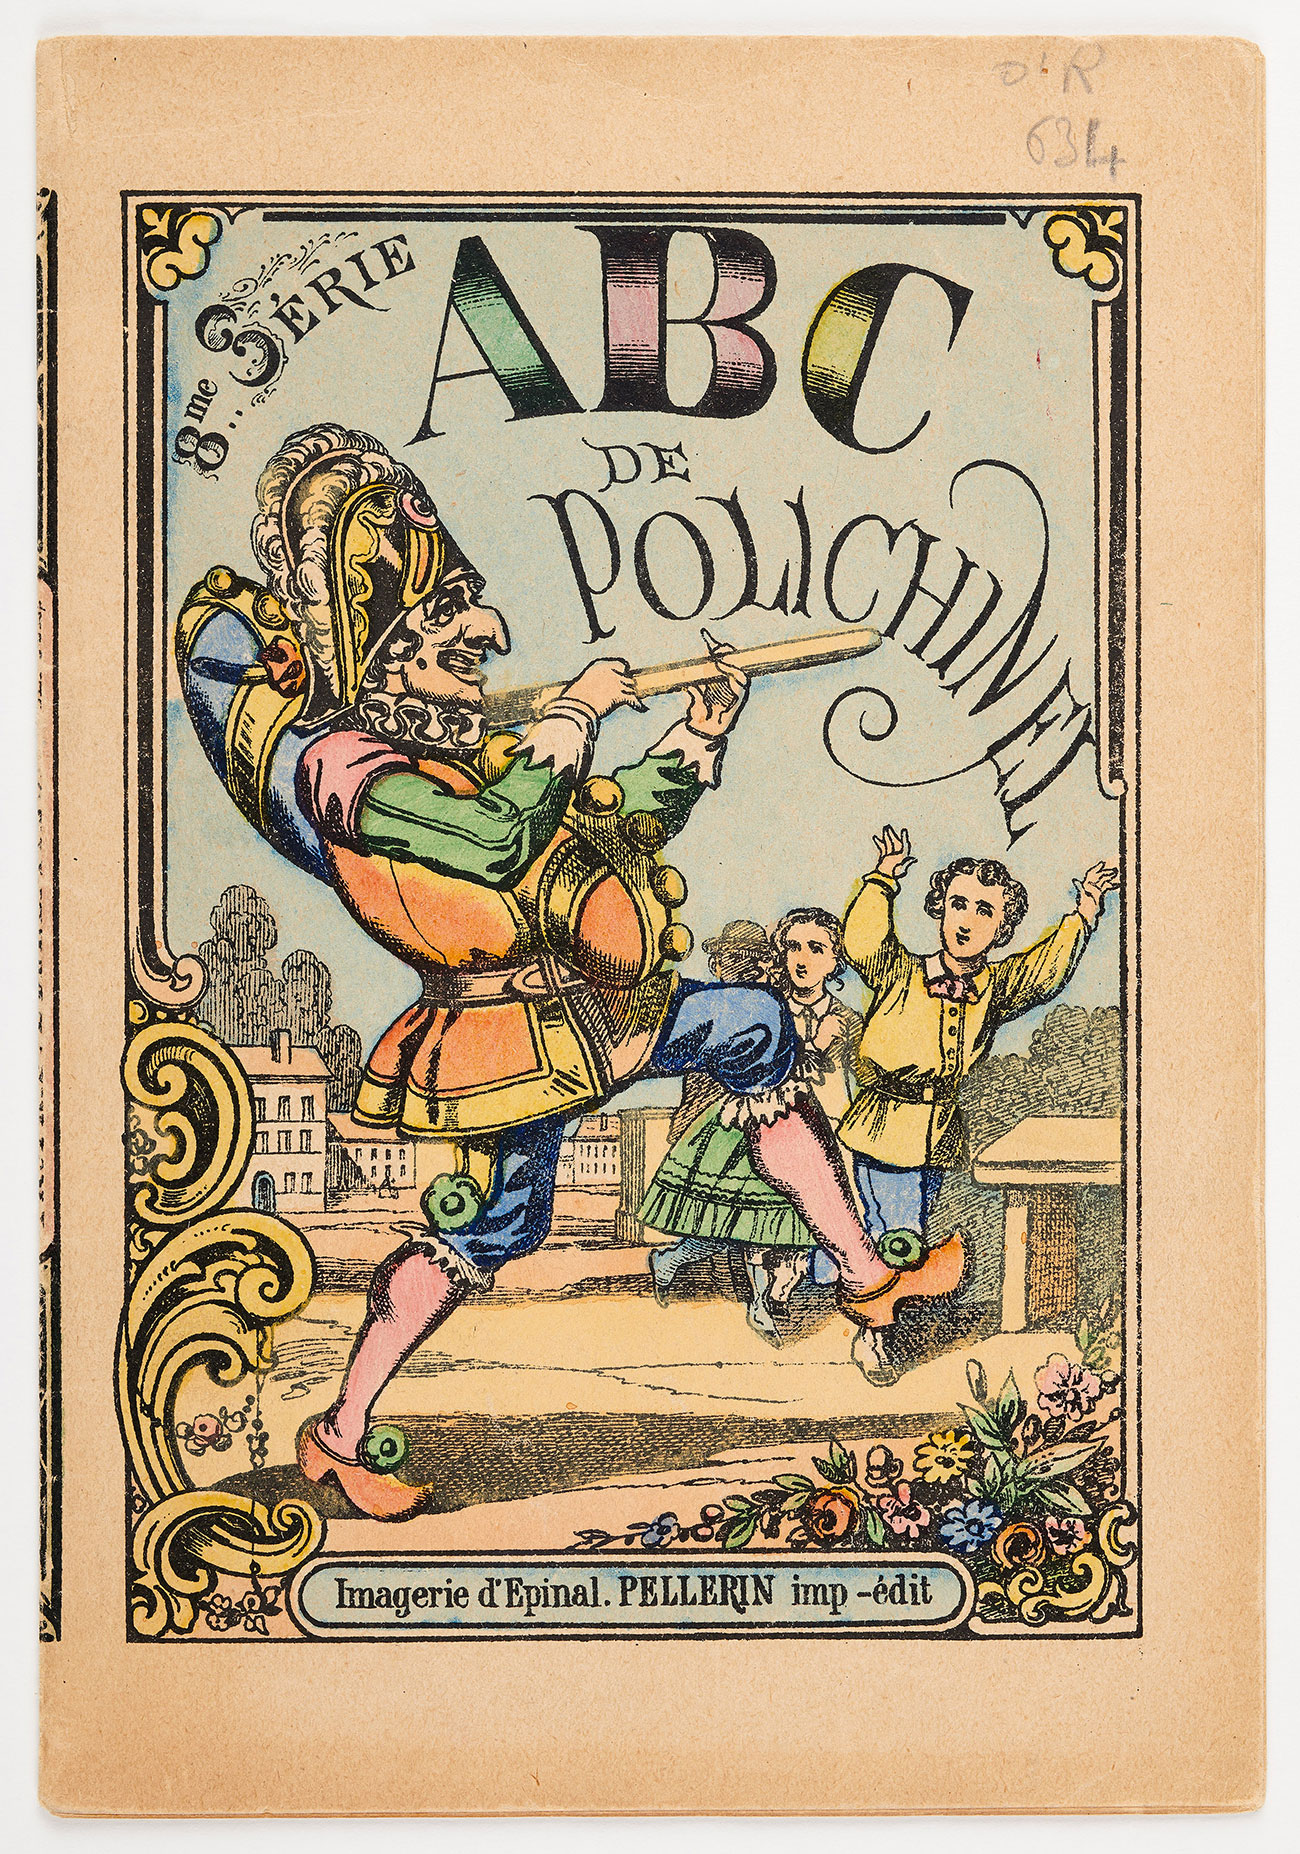 « ABC de Polichinel », monographie imprimée de Pellerin & Cie à Epinal,  fin du XIXe siècle. Mucem, O1R 634 © Mucem / Marianne Kuhn